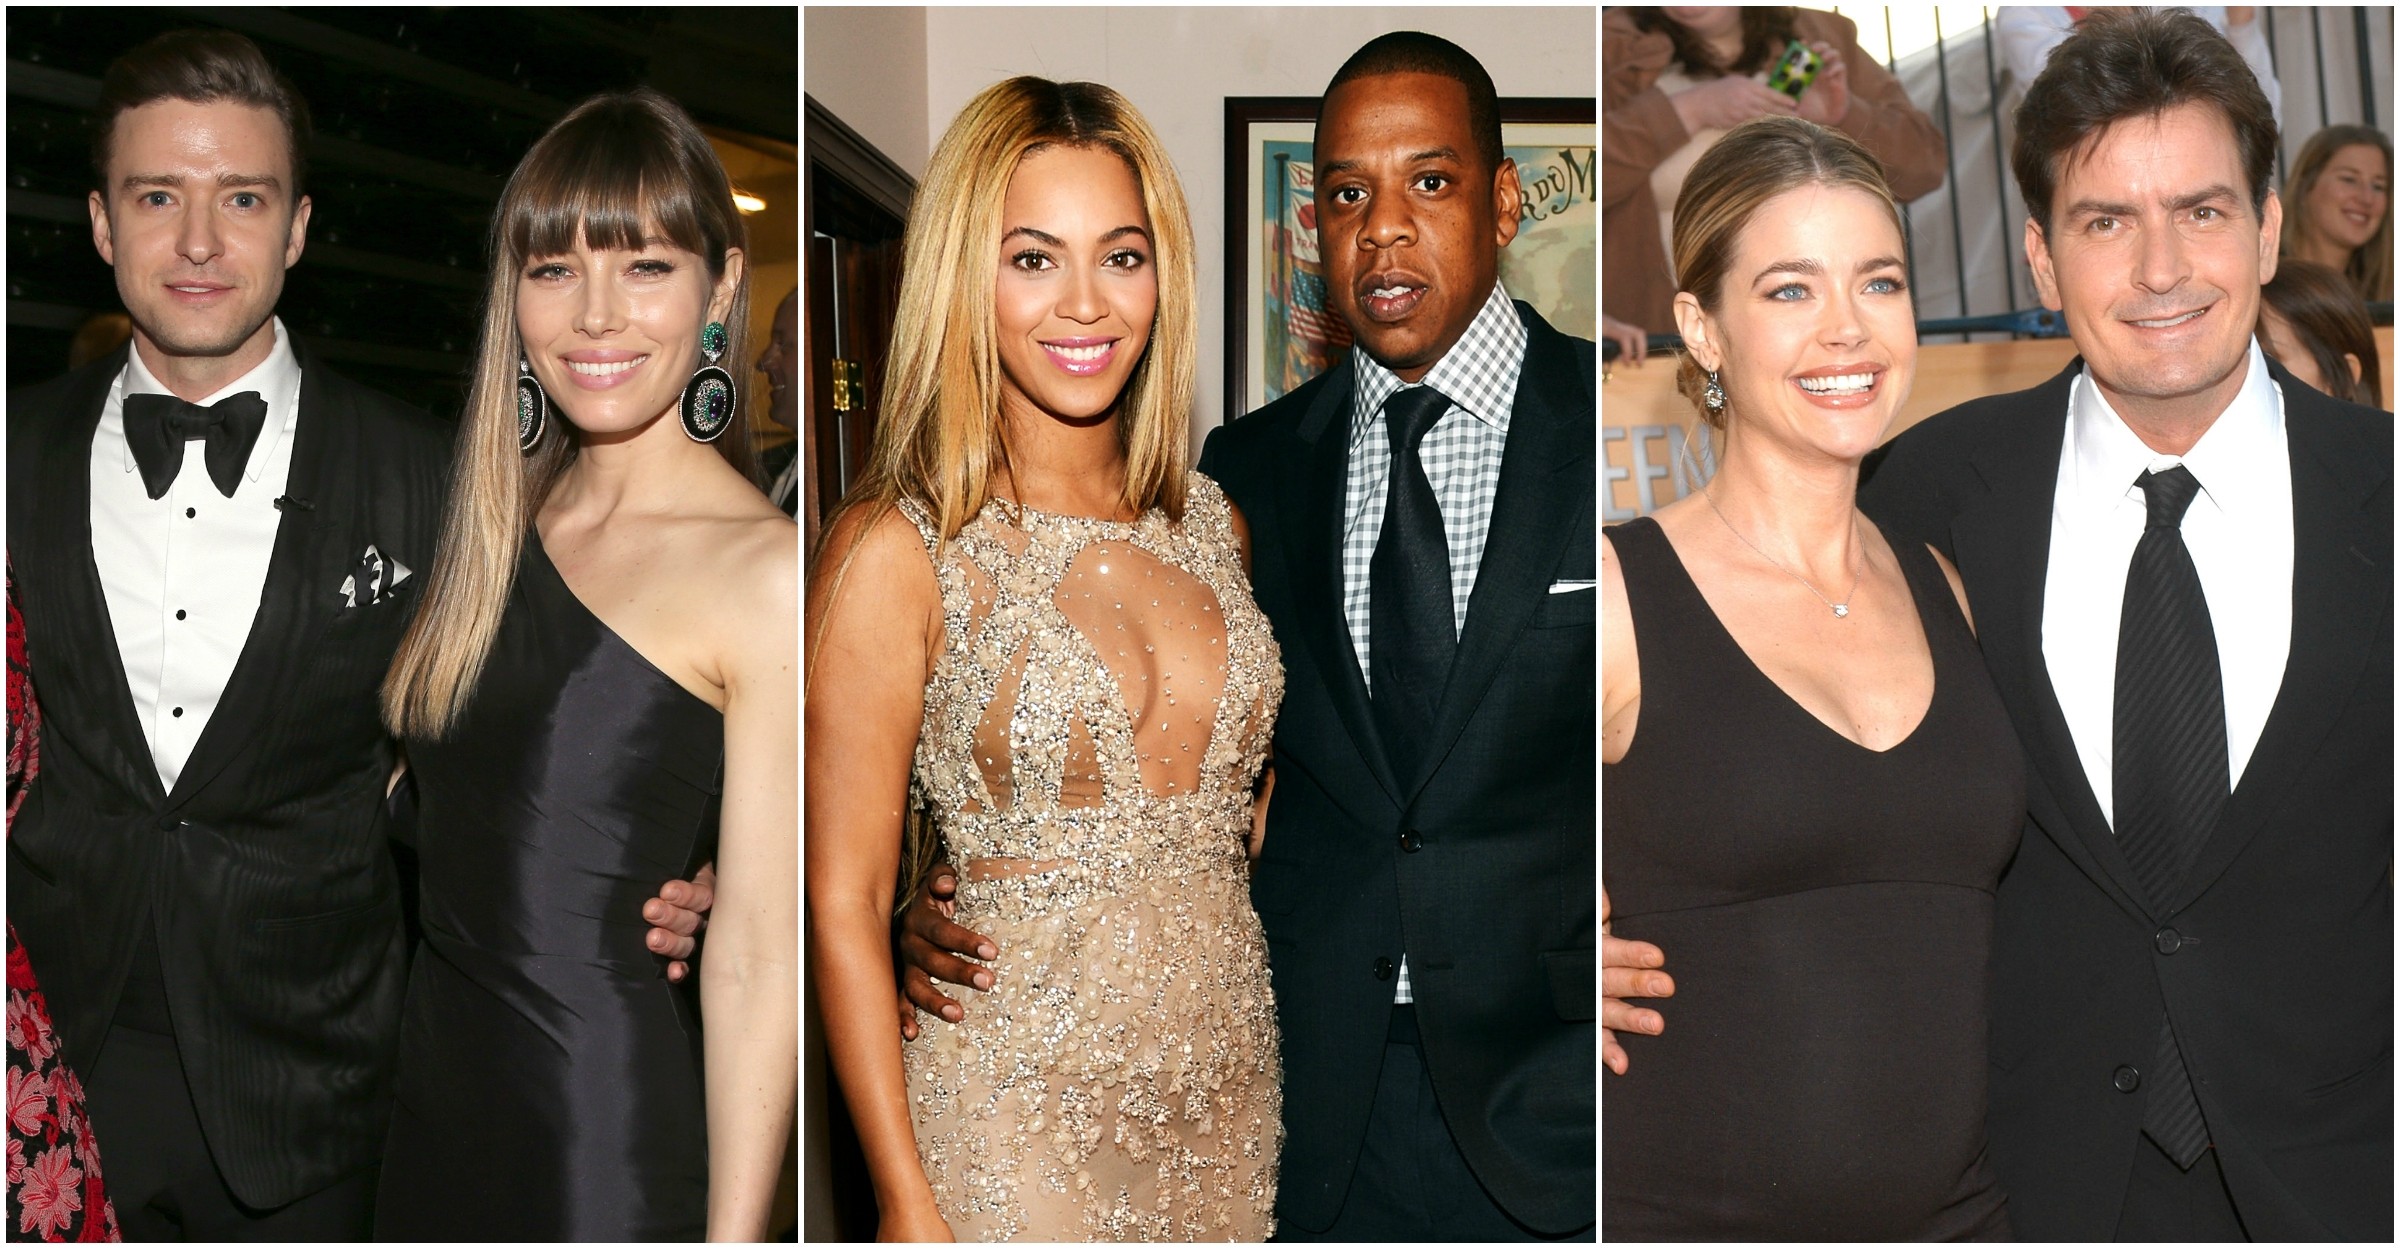 Justin Timberlake com Jessica Biel, Beyoncé com Jay-Z e Denise Richards com Charlie Sheen. (Foto: Getty Images)